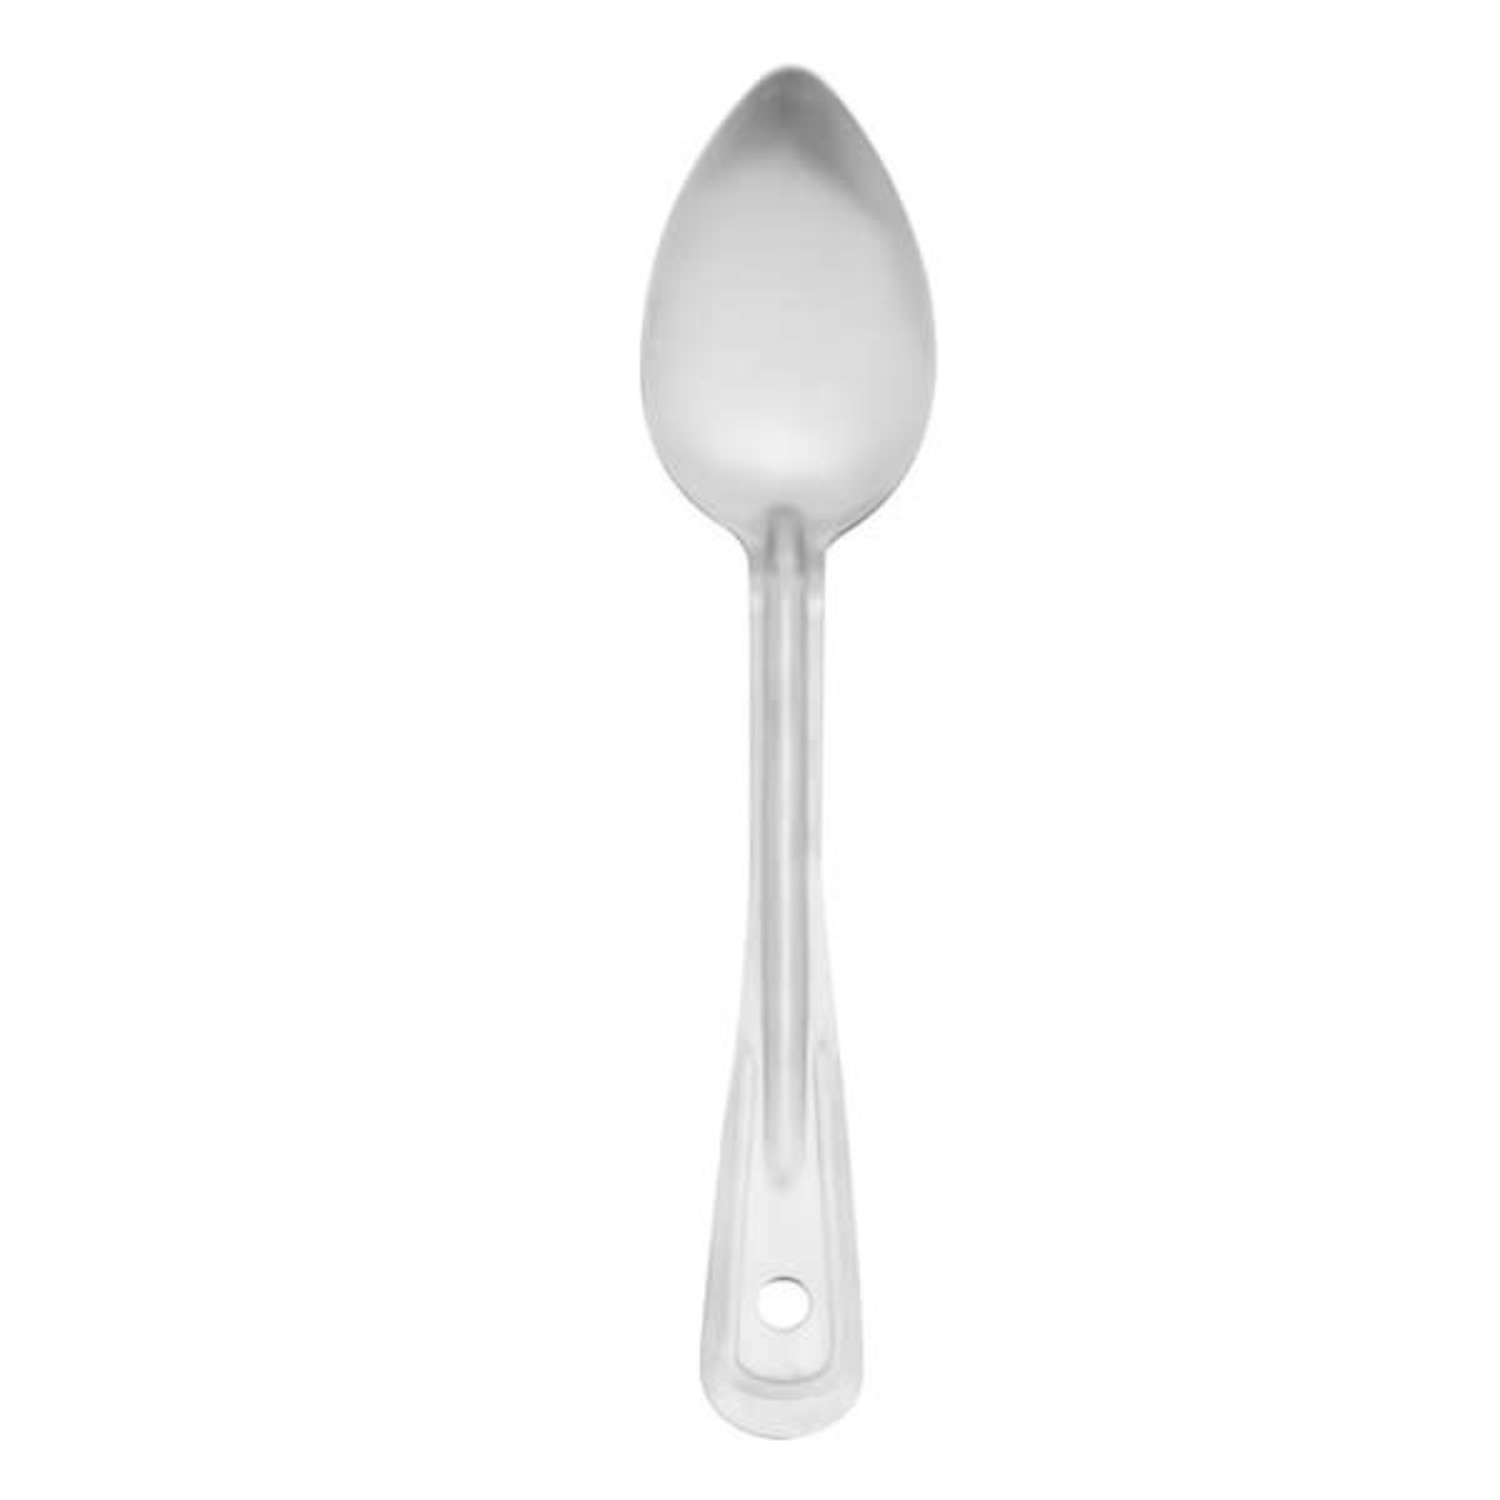 metal spoon, 11 WAIT - Whisk